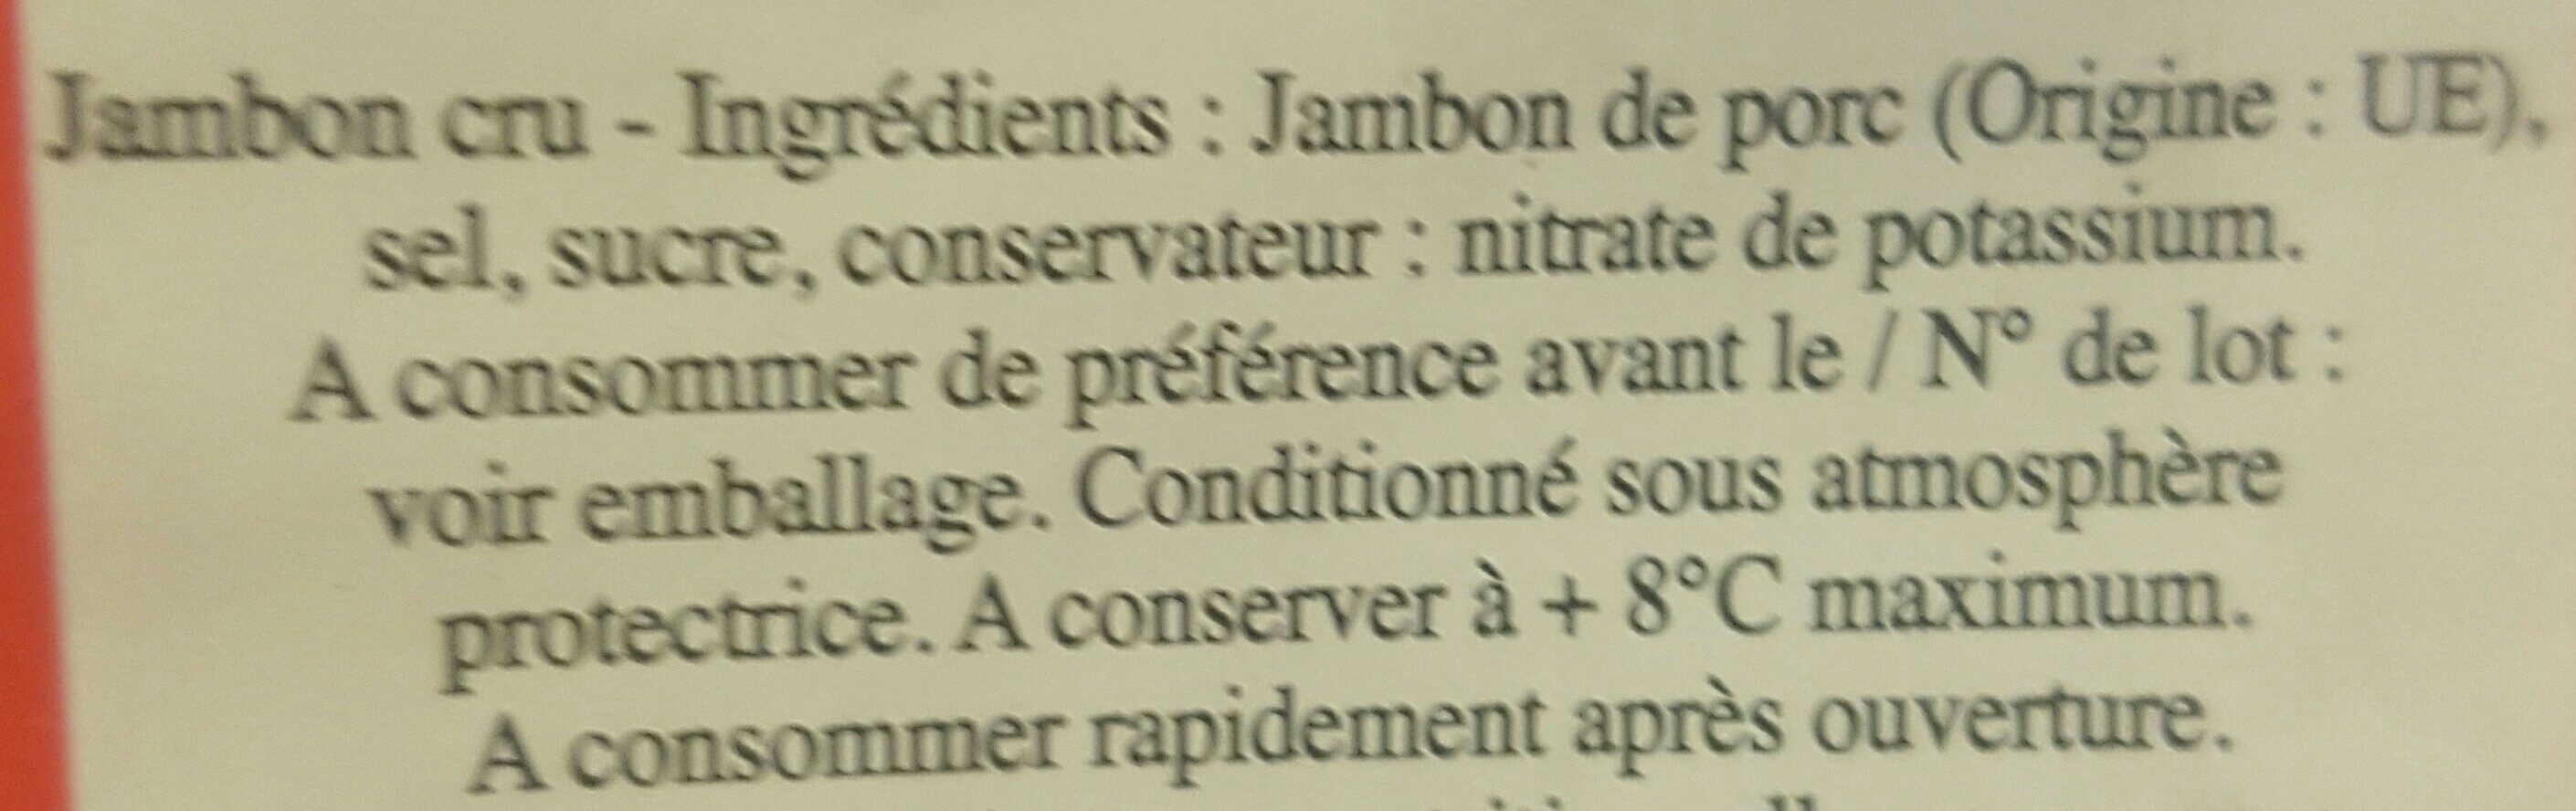 Jambon cru - Ingredients - fr